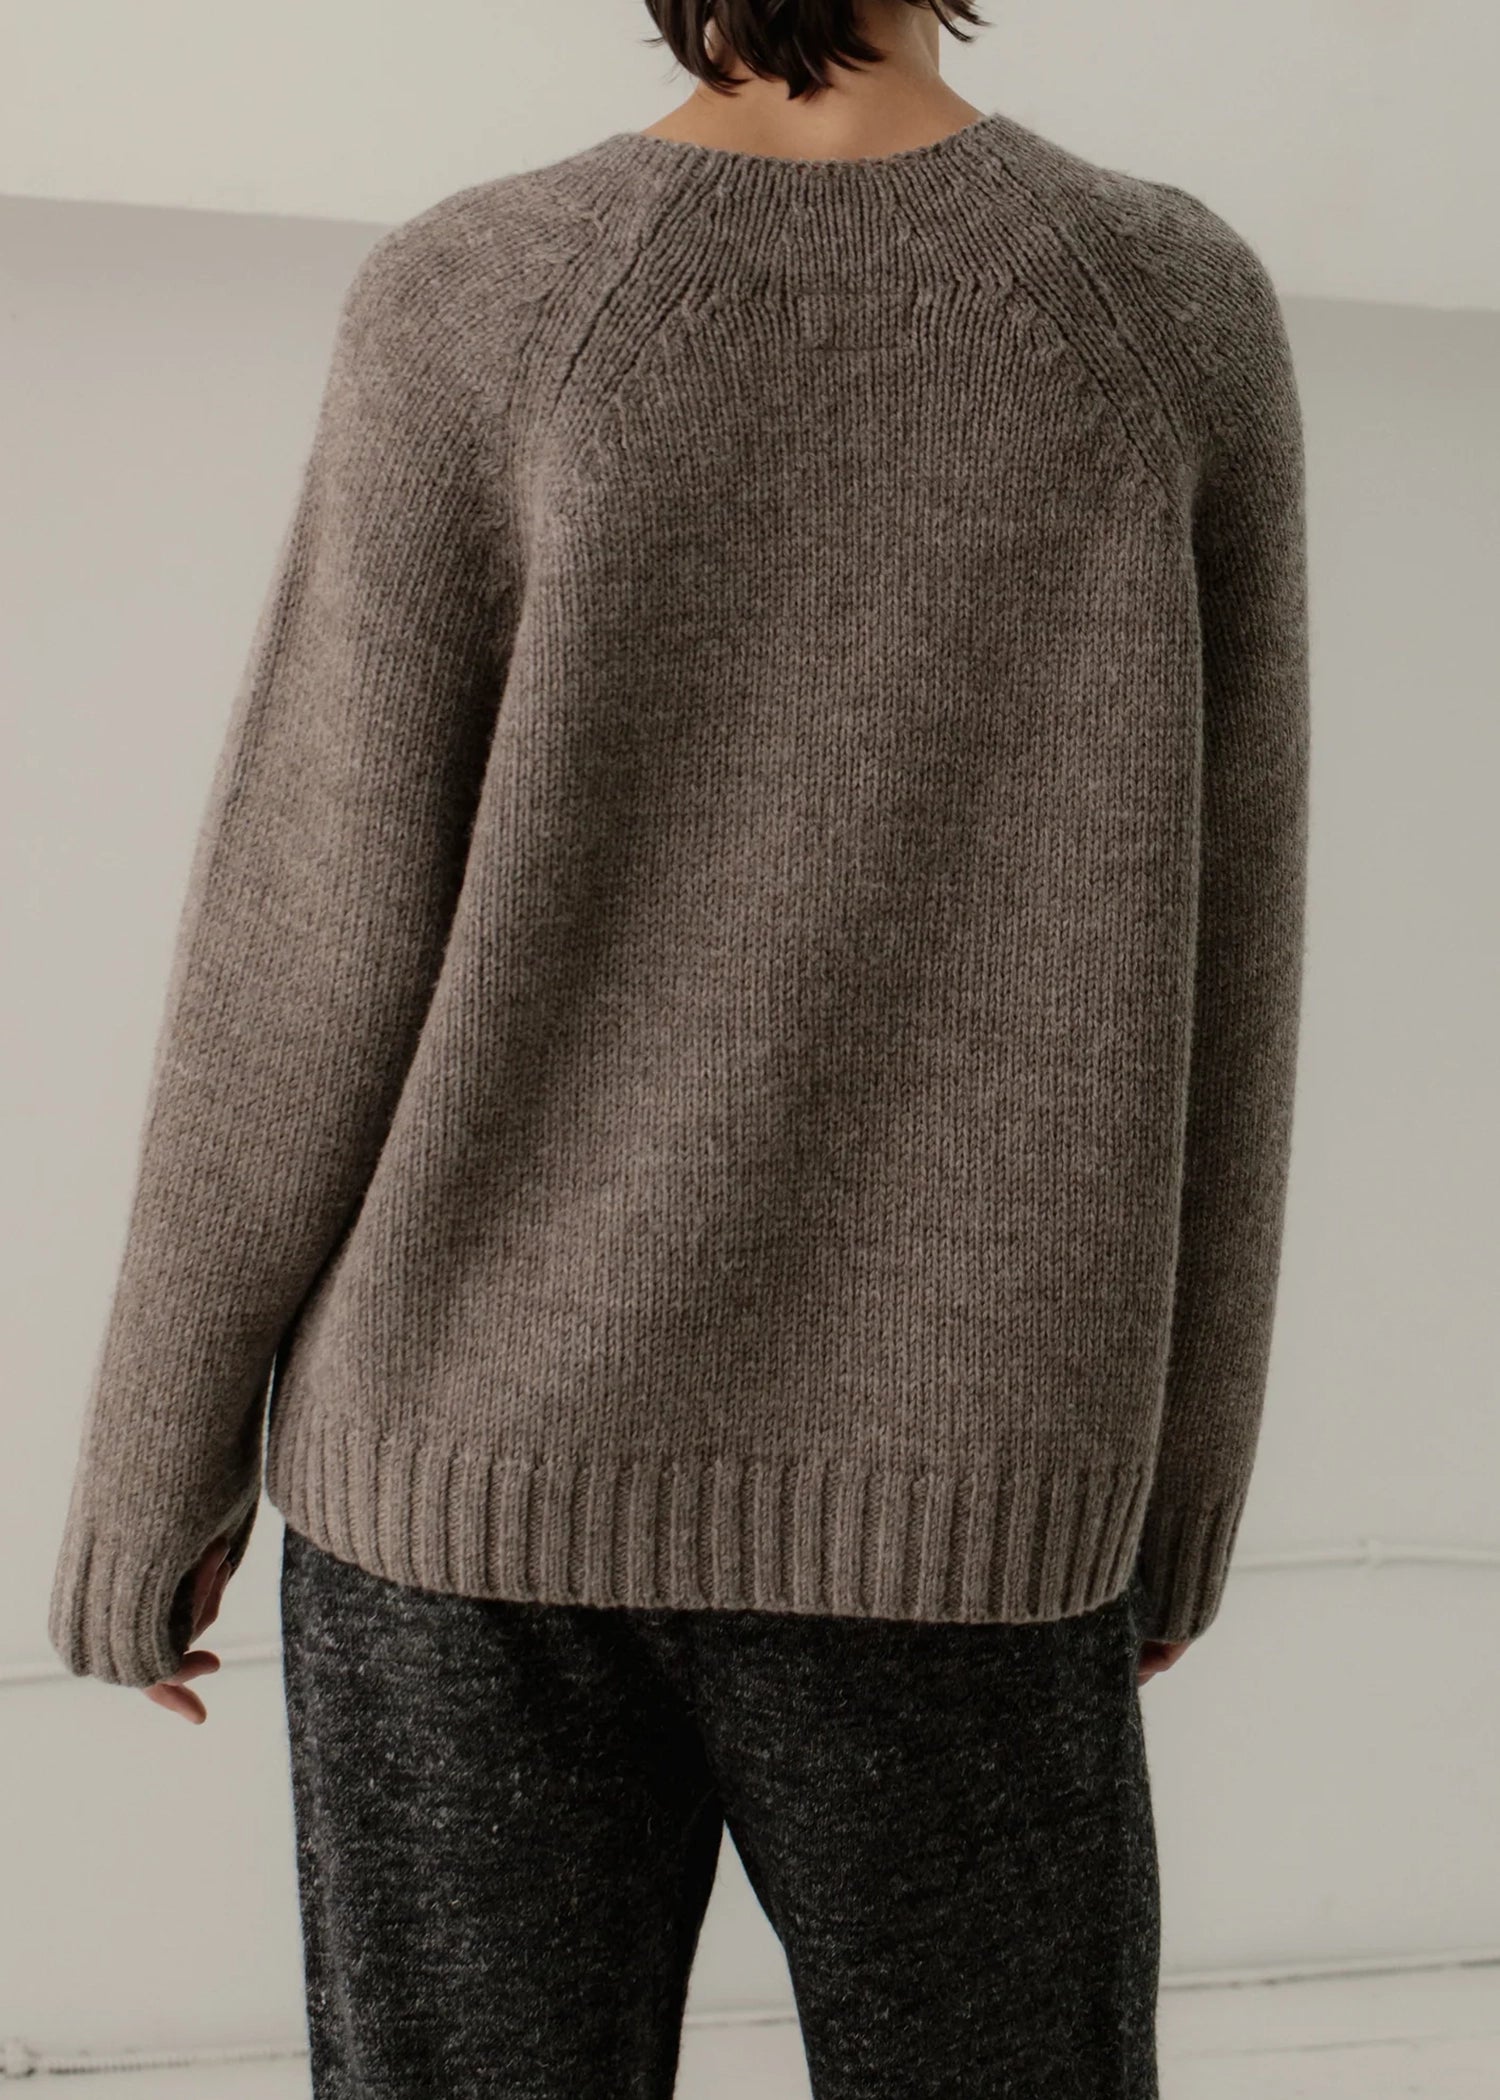 Bare-Knitwear-Channel-Sweater-root